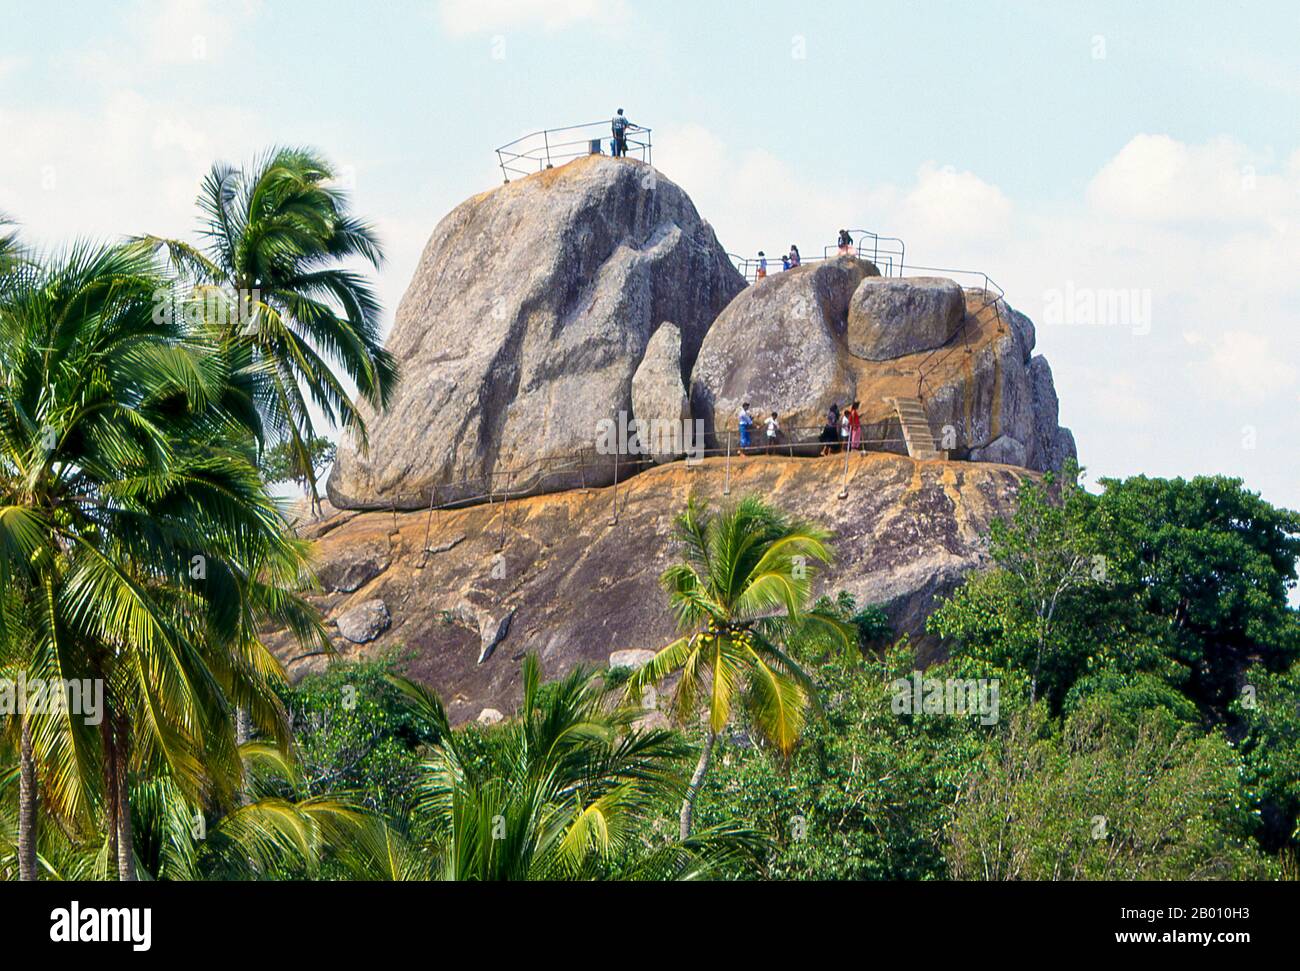 Sri Lanka: Besucher auf der Aradhana Gala (Meditationsfelsen), Mihintale. Mihintale ist ein Berggipfel in der Nähe von Anuradhapura, der von Sri Lankans als Ort einer Begegnung zwischen dem buddhistischen Mönch Mahinda und König Devanampiyatissa geglaubt wird, der die Präsenz des Buddhismus in Sri Lanka einweihte. Es ist jetzt ein Wallfahrtsort und der Ort von mehreren religiösen Denkmälern und verlassenen Strukturen. Stockfoto